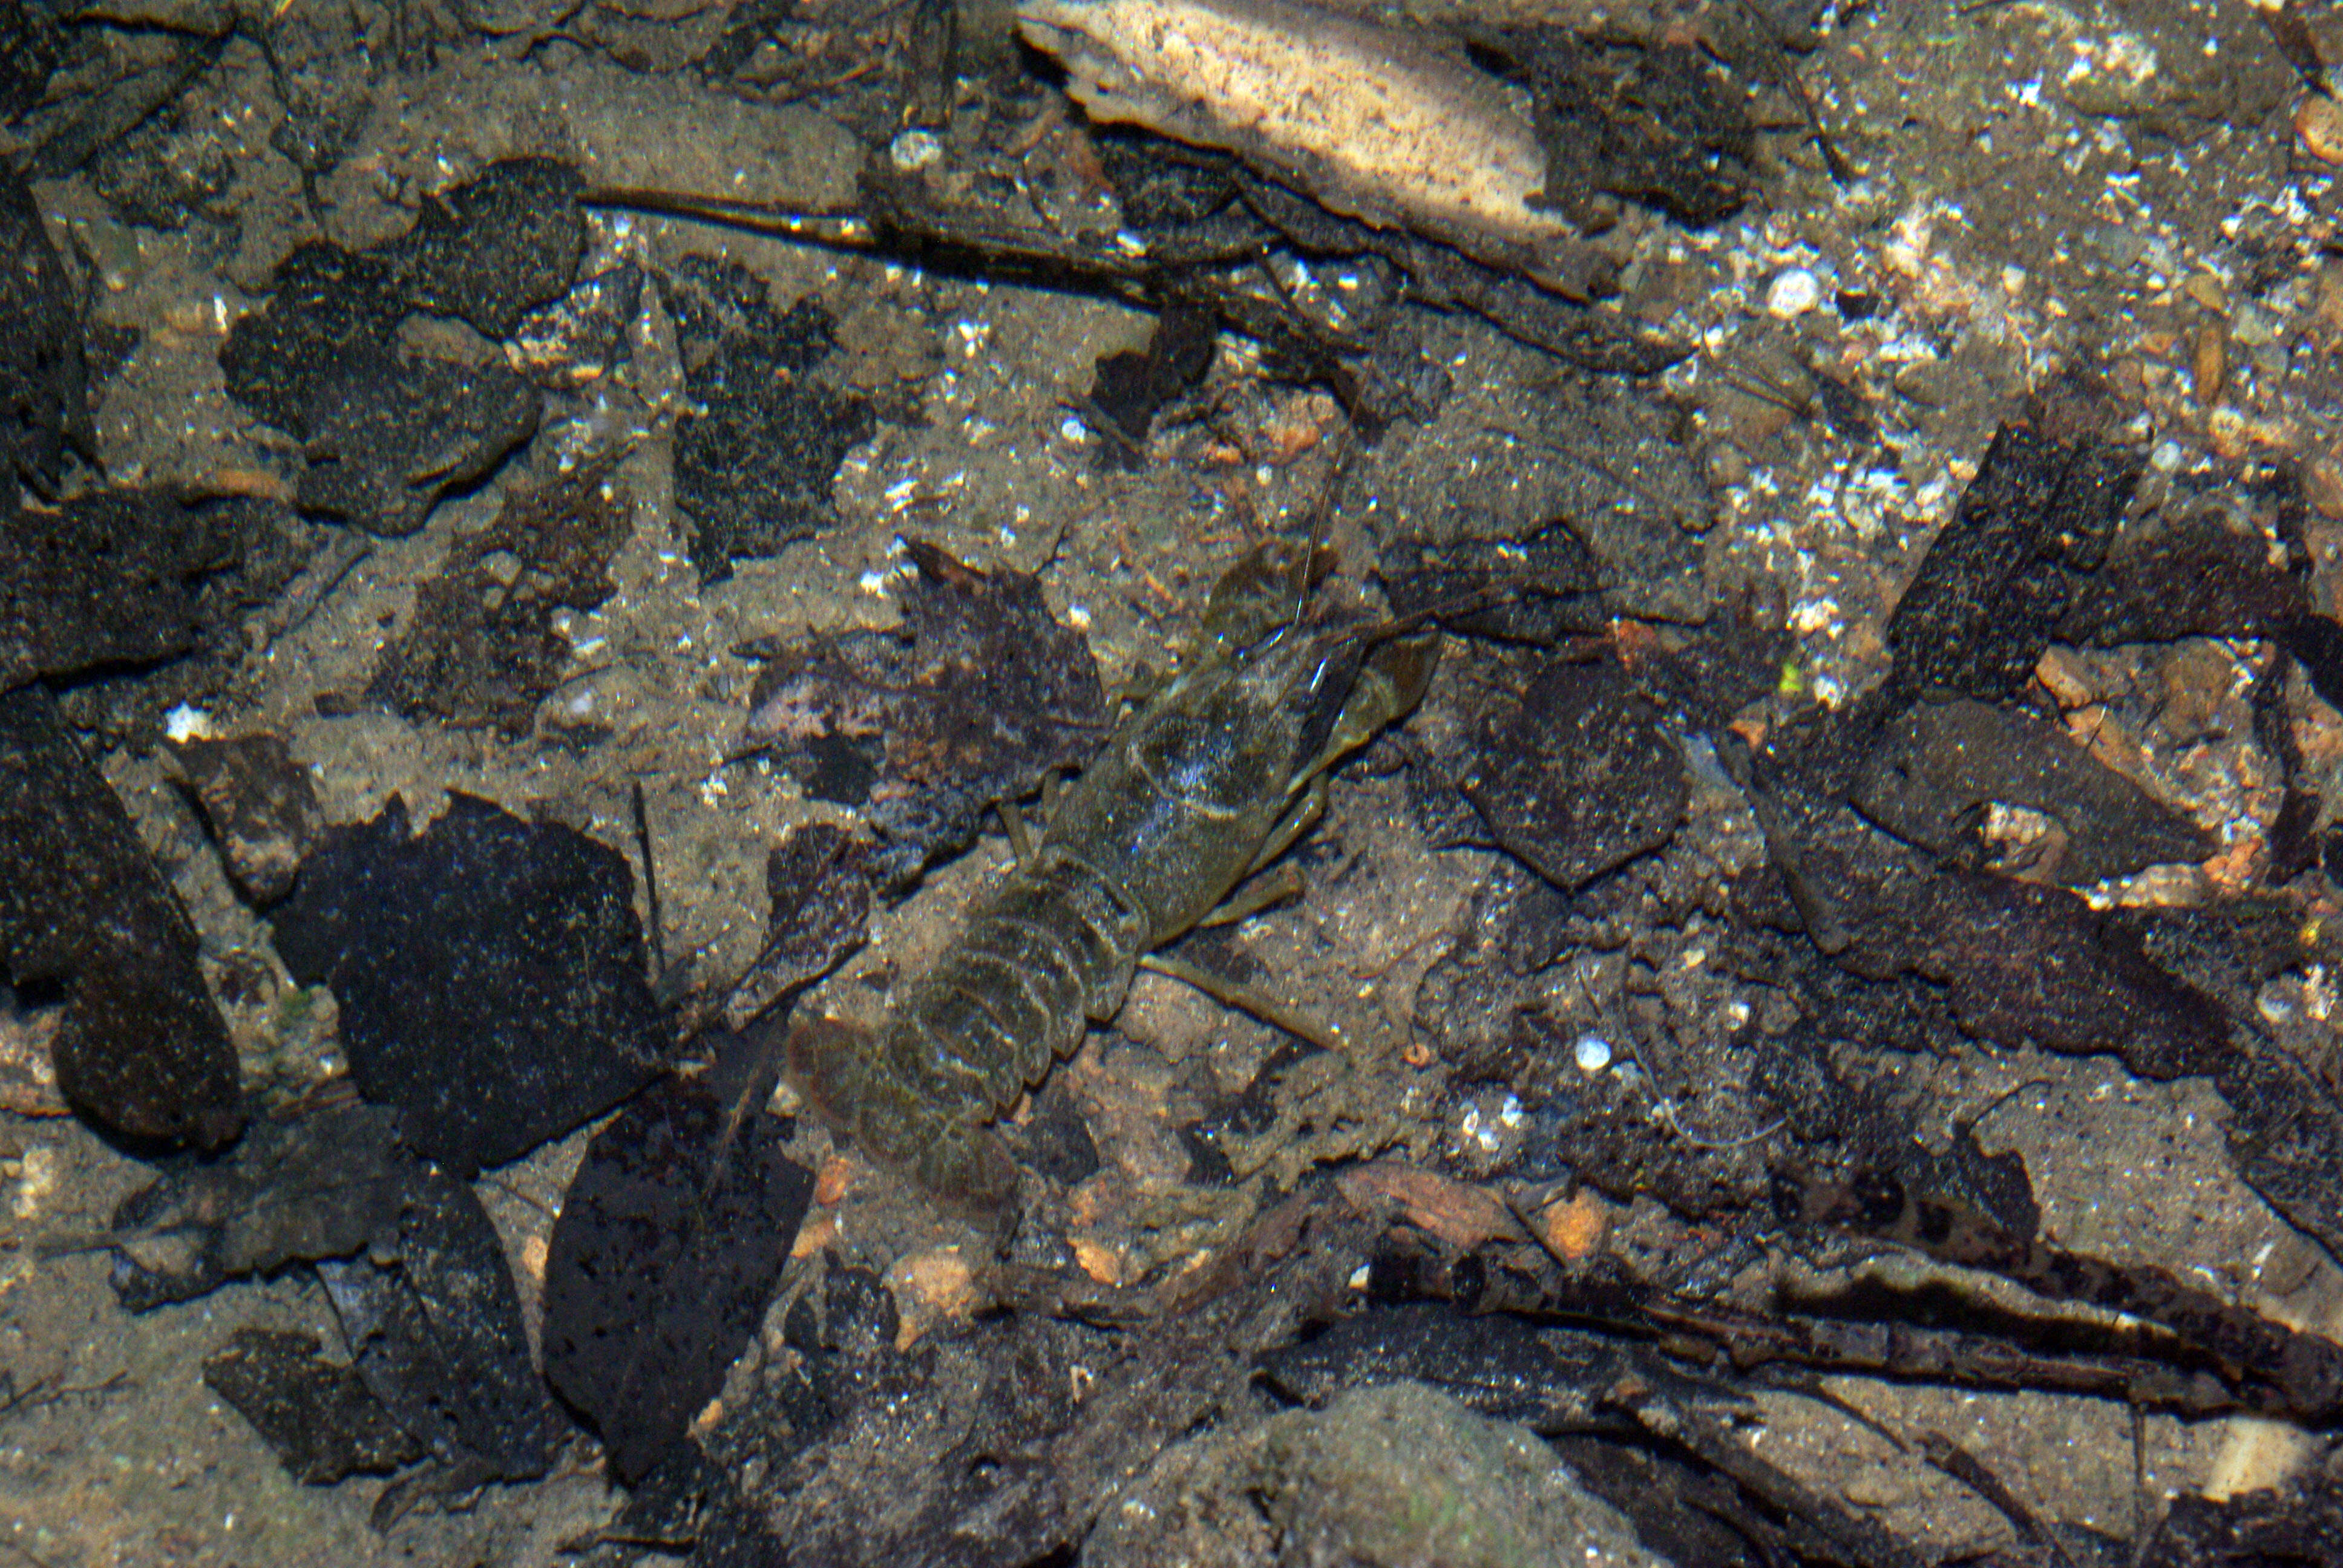 Plancia ëd Austropotamobius pallipes